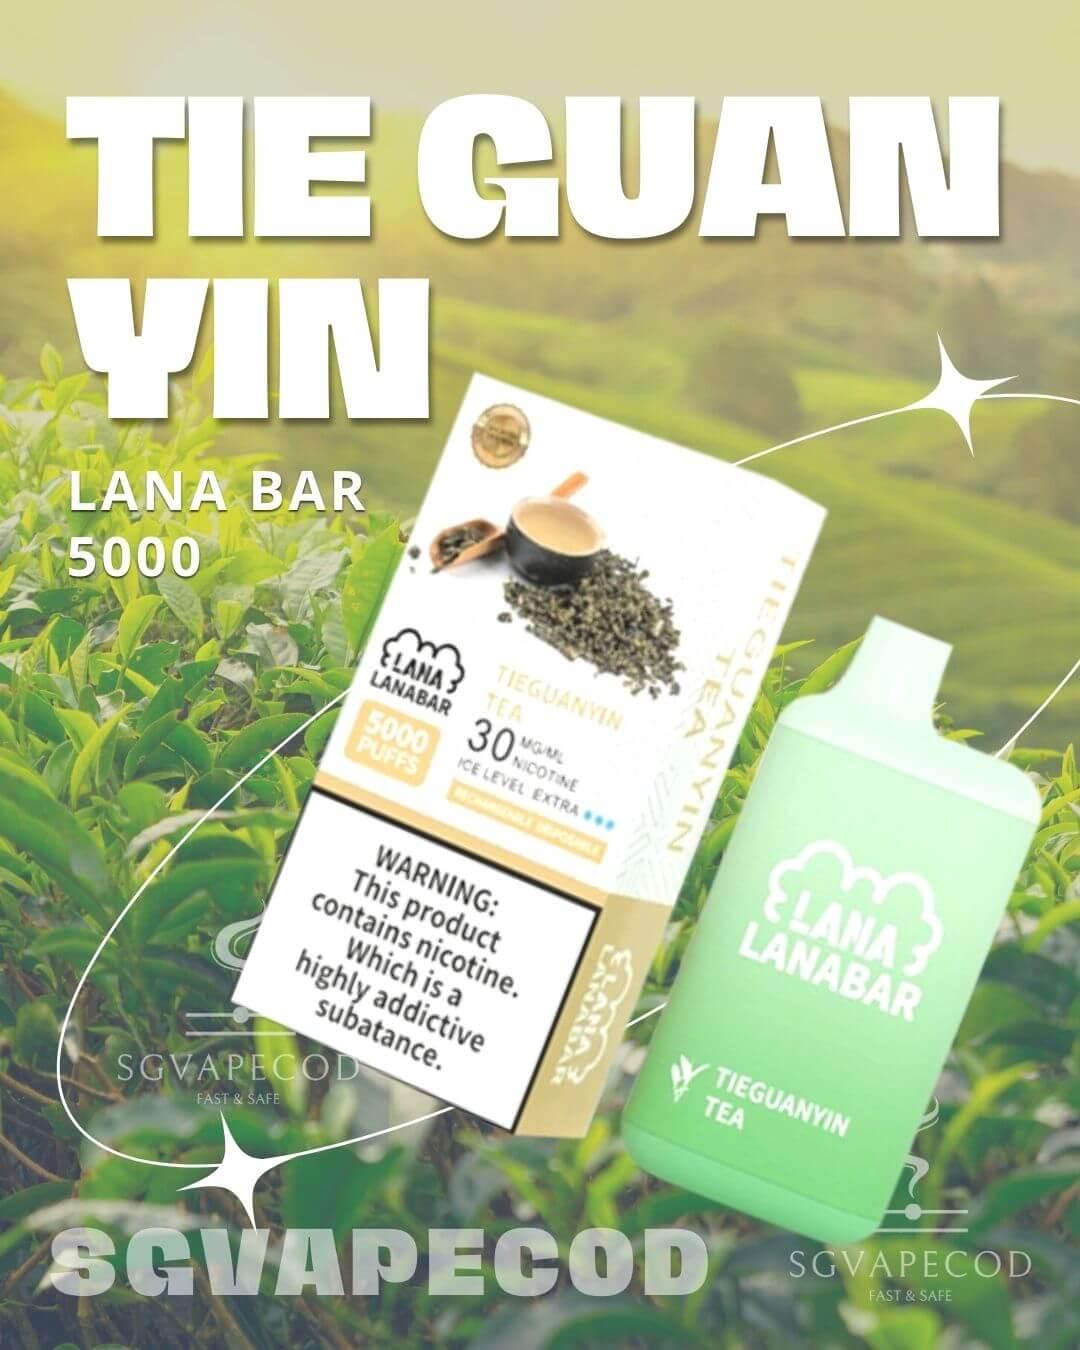 Lana bar 5000-Tie Guan Yin